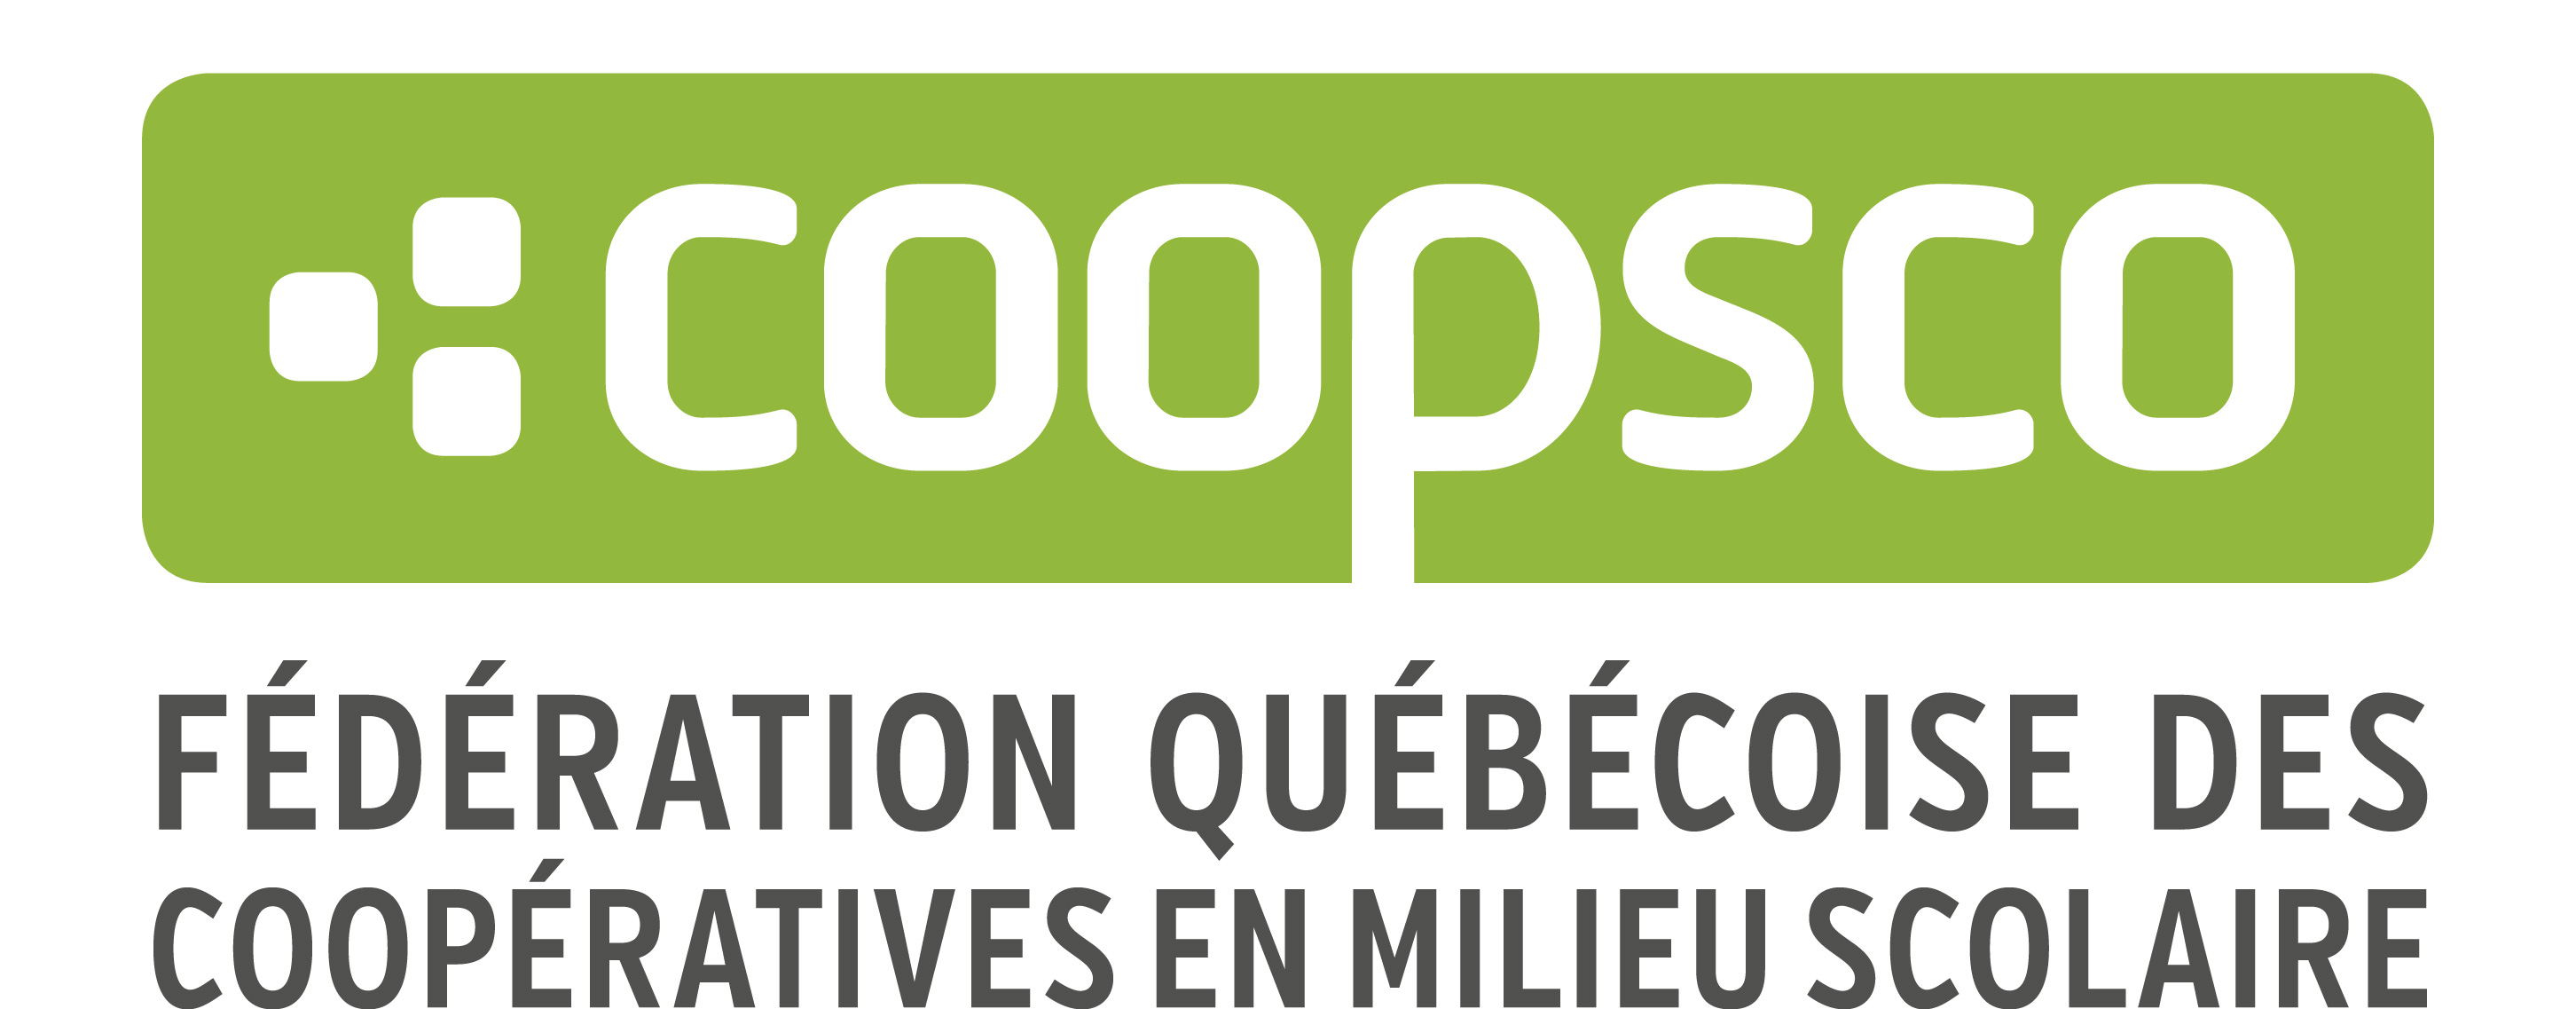 Fédération québécoise des coopératives en milieu scolaire